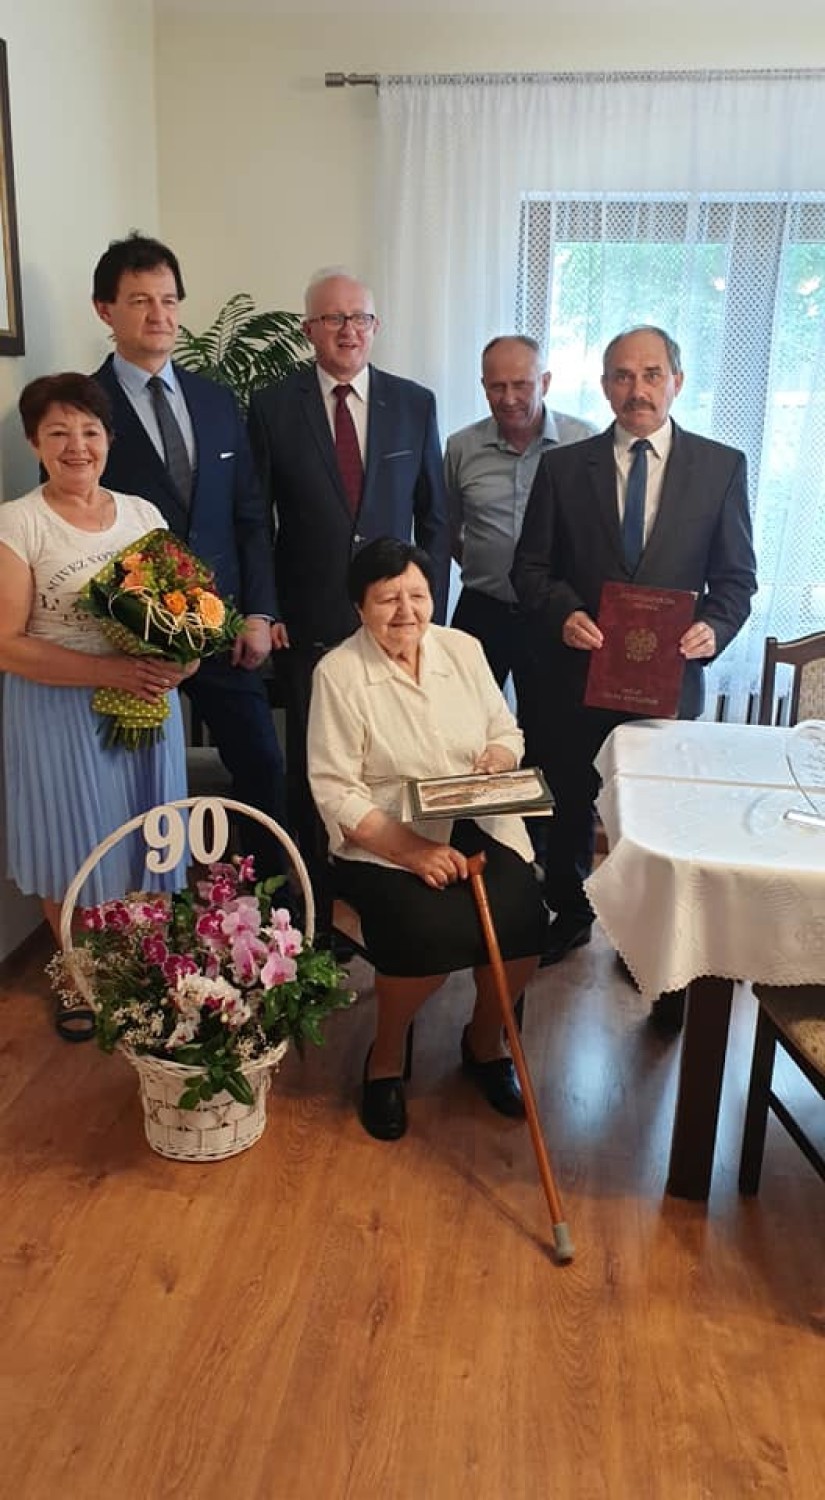 90 urodziny mieszkanki gminy Gołańcz. Życzenia złożył jej między innymi burmistrz